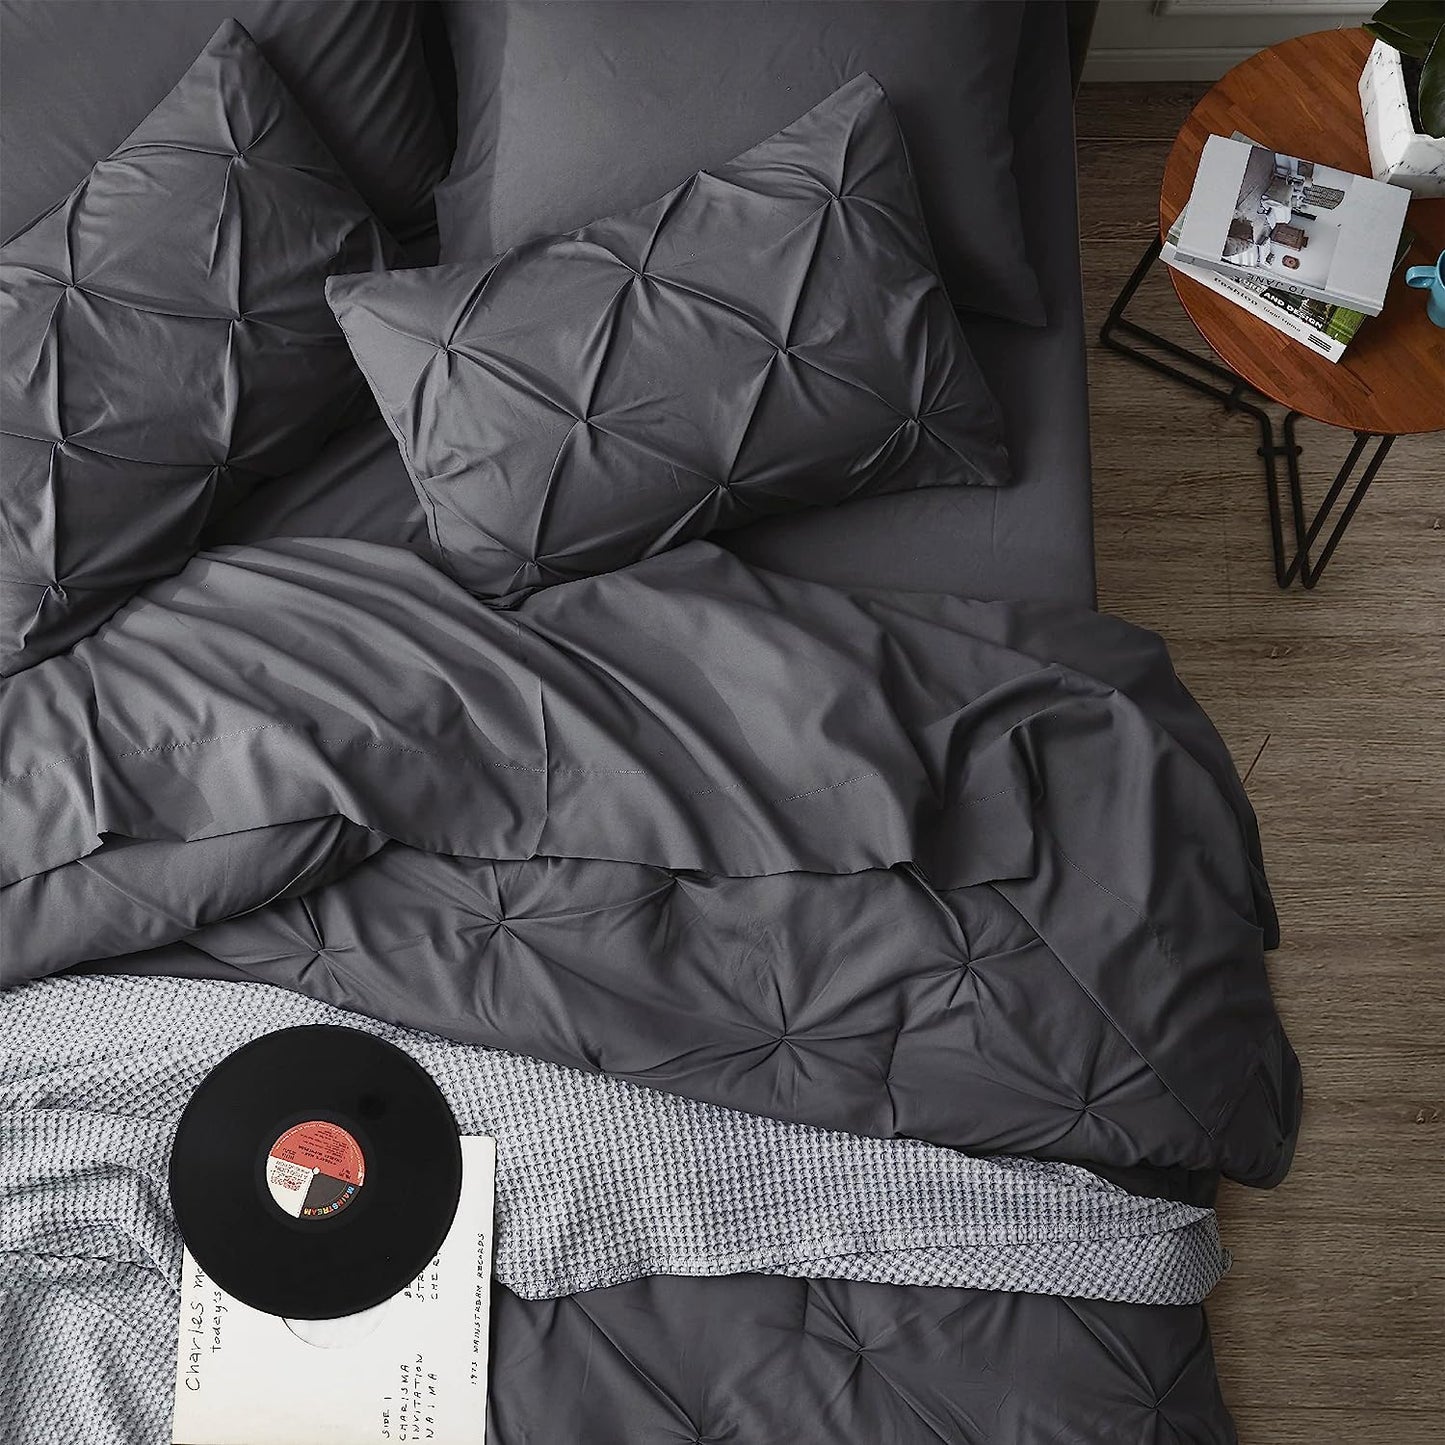 Dark Grey Pinch Pleated 7 Piece Bedding Comforter Set